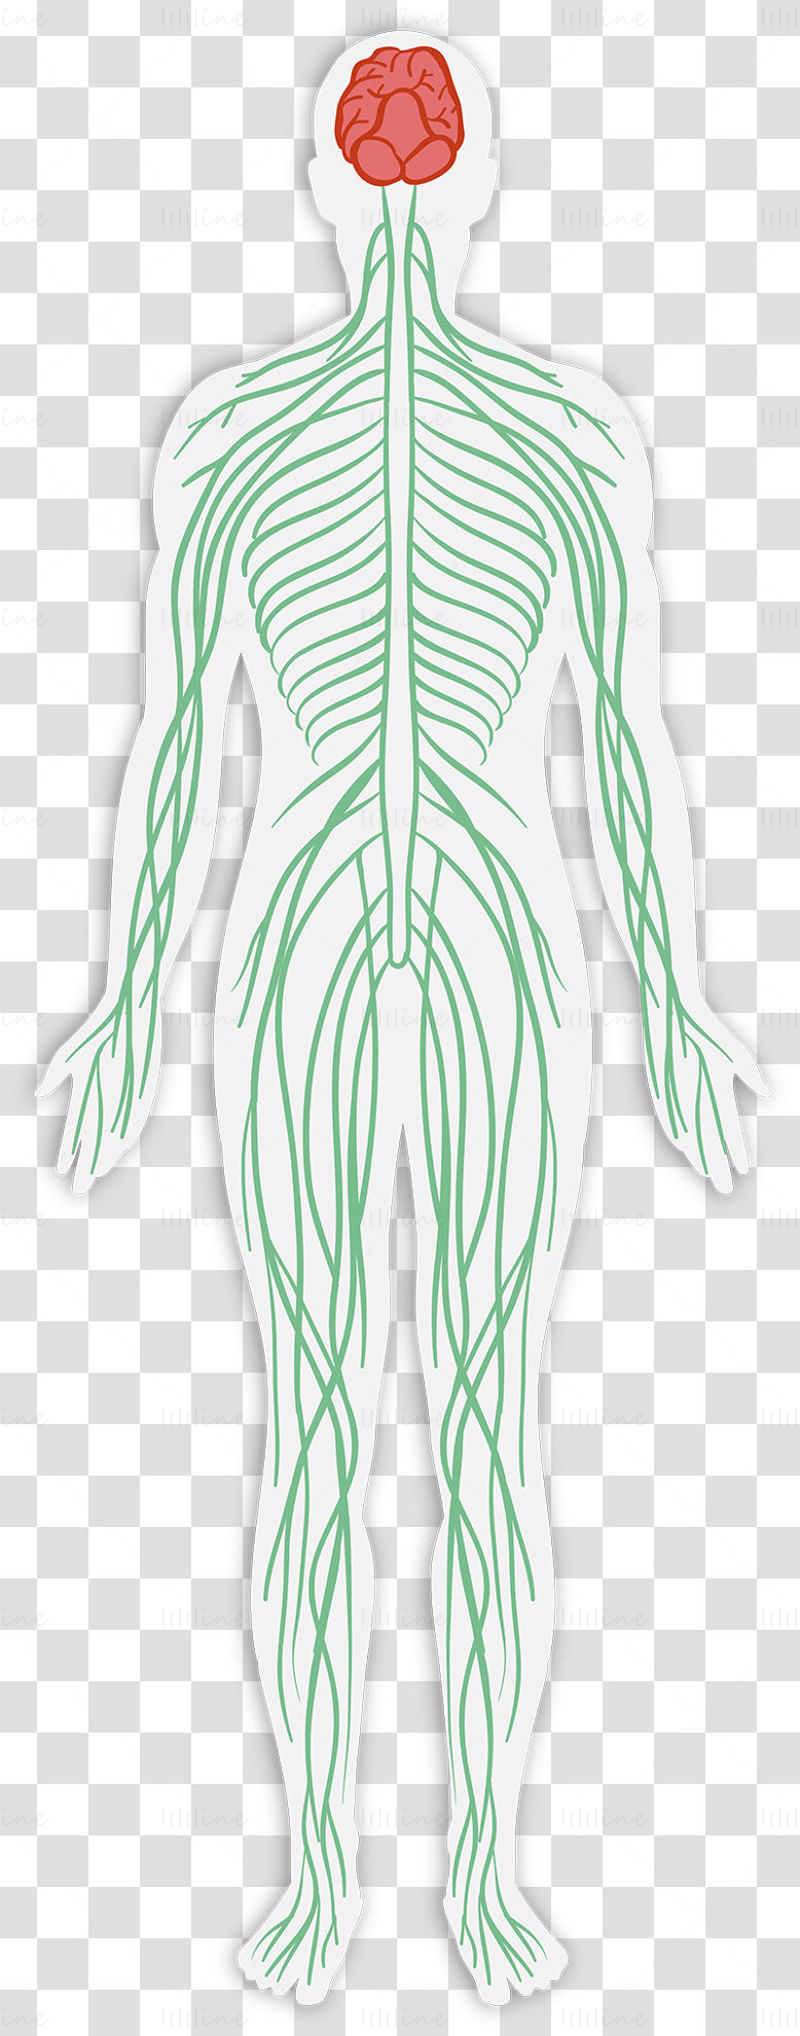 Adult nervous system vector illustration